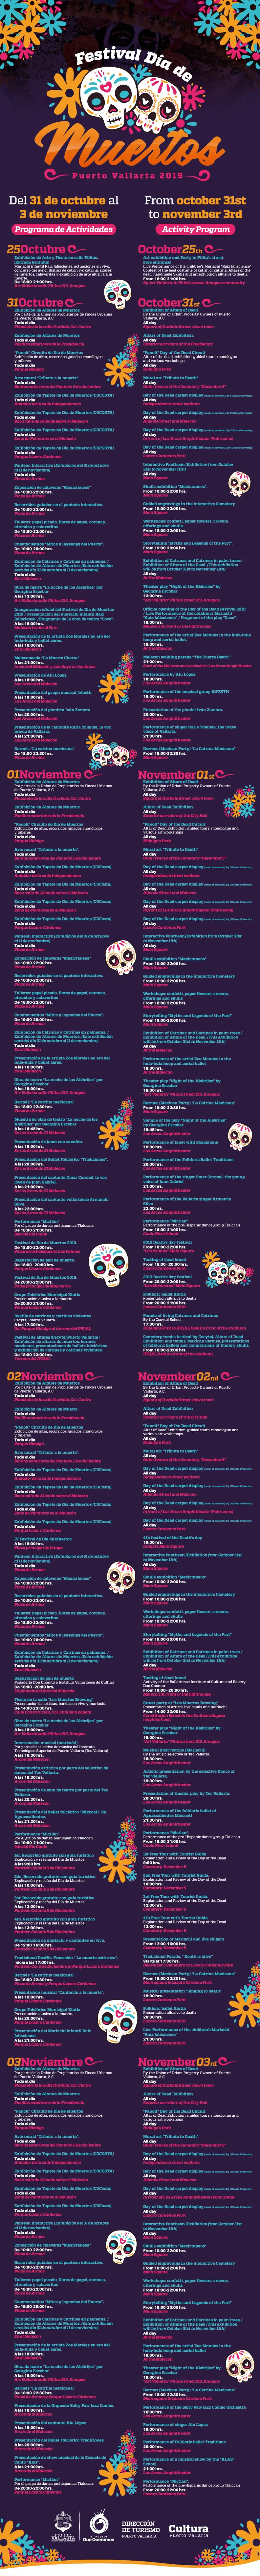 Programa de eventos para el festival del día de muertos 2019